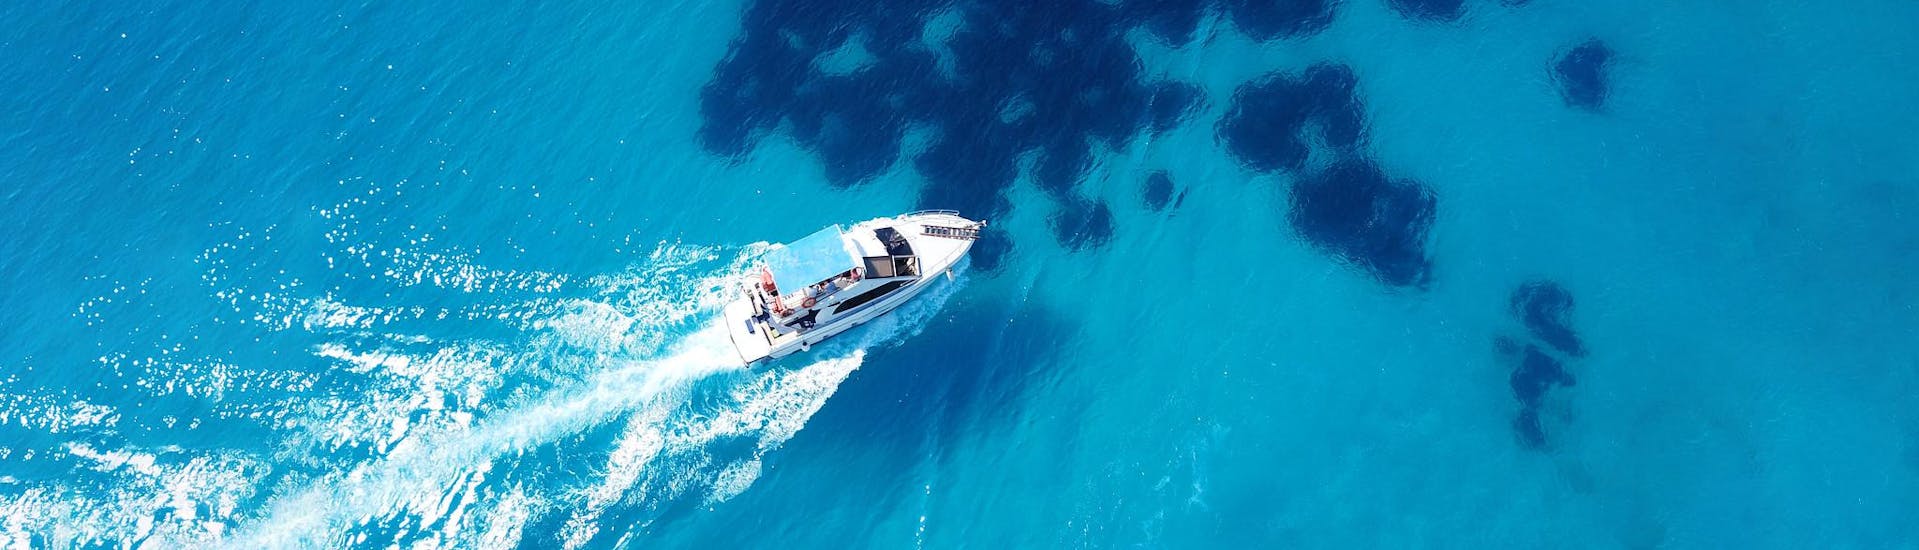 Des personnes profitent de l'eau transparente en pleine mer lors d'une location de bateau avec skipper